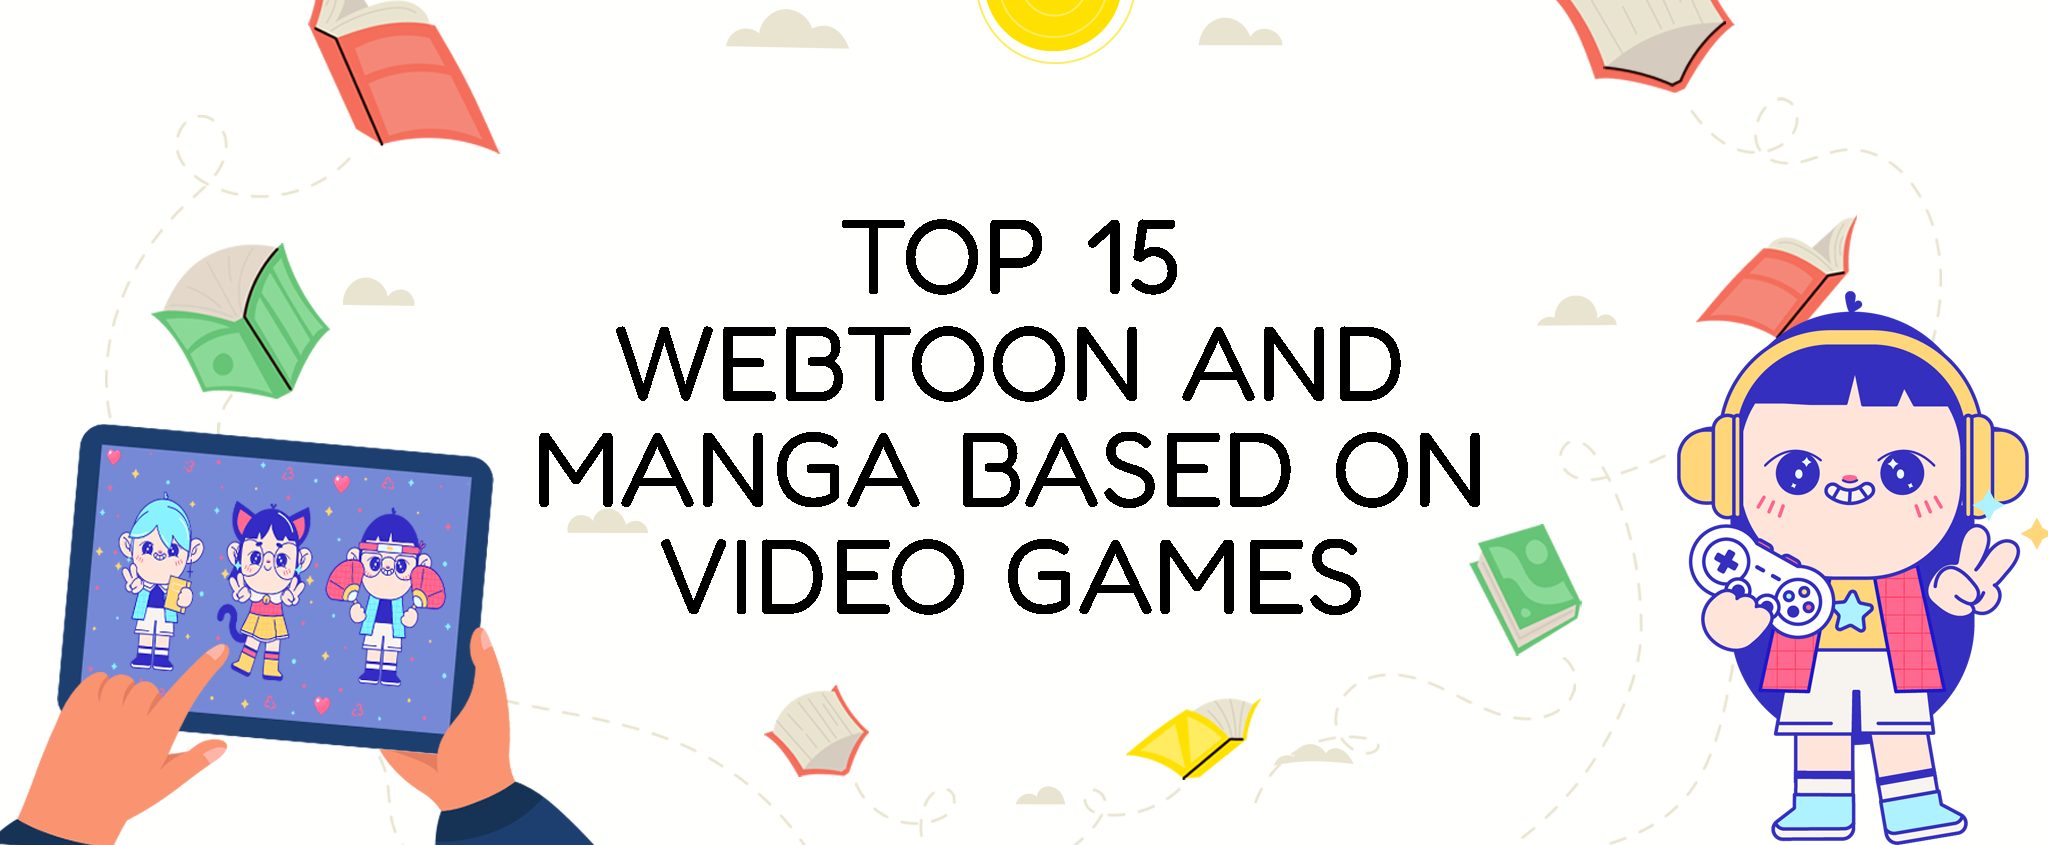 Top 15 Webtoon and Manga Based on Video Games